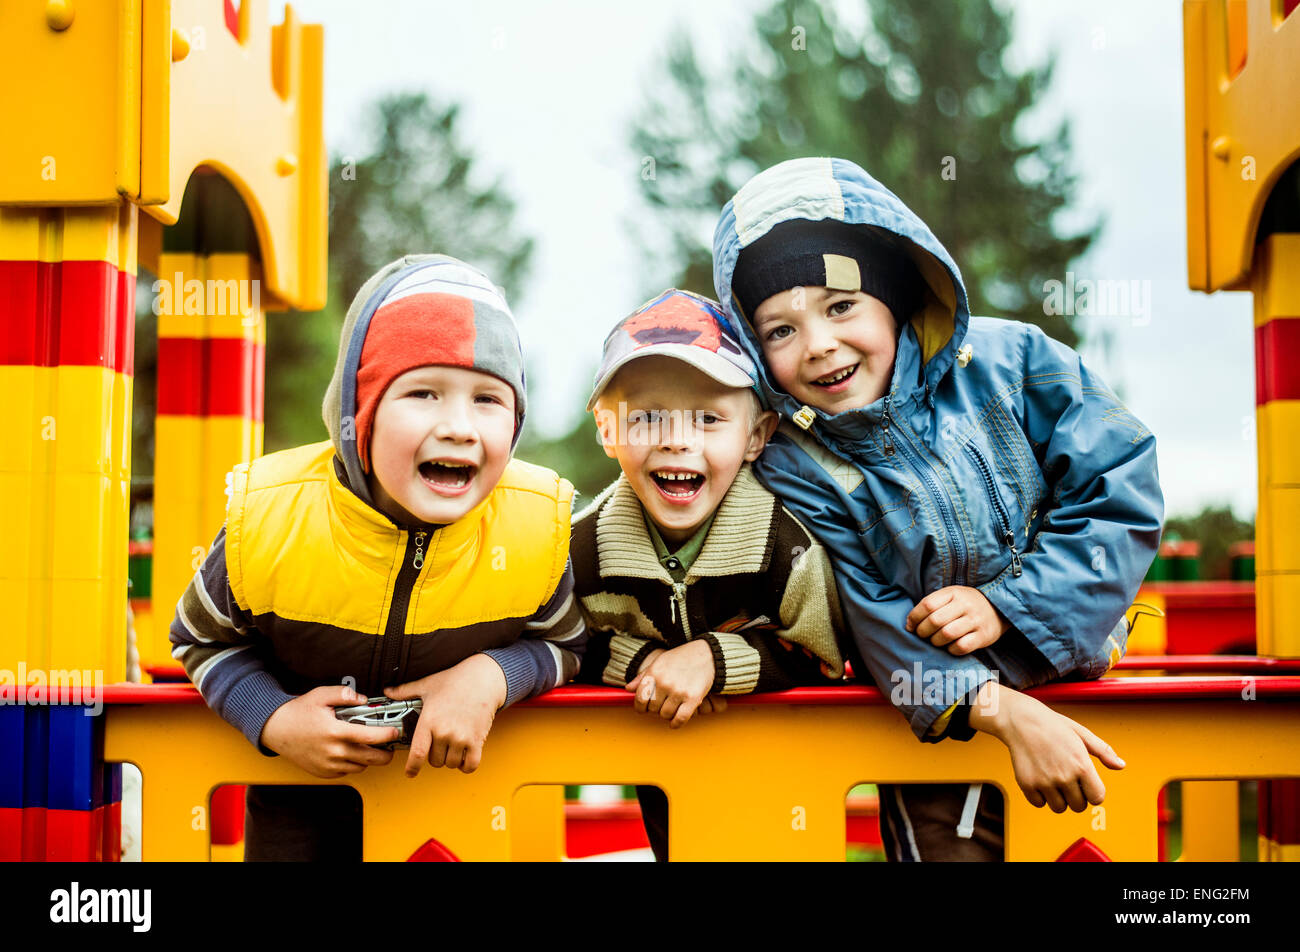 Caucasian boys smiling at aire de jeux Banque D'Images